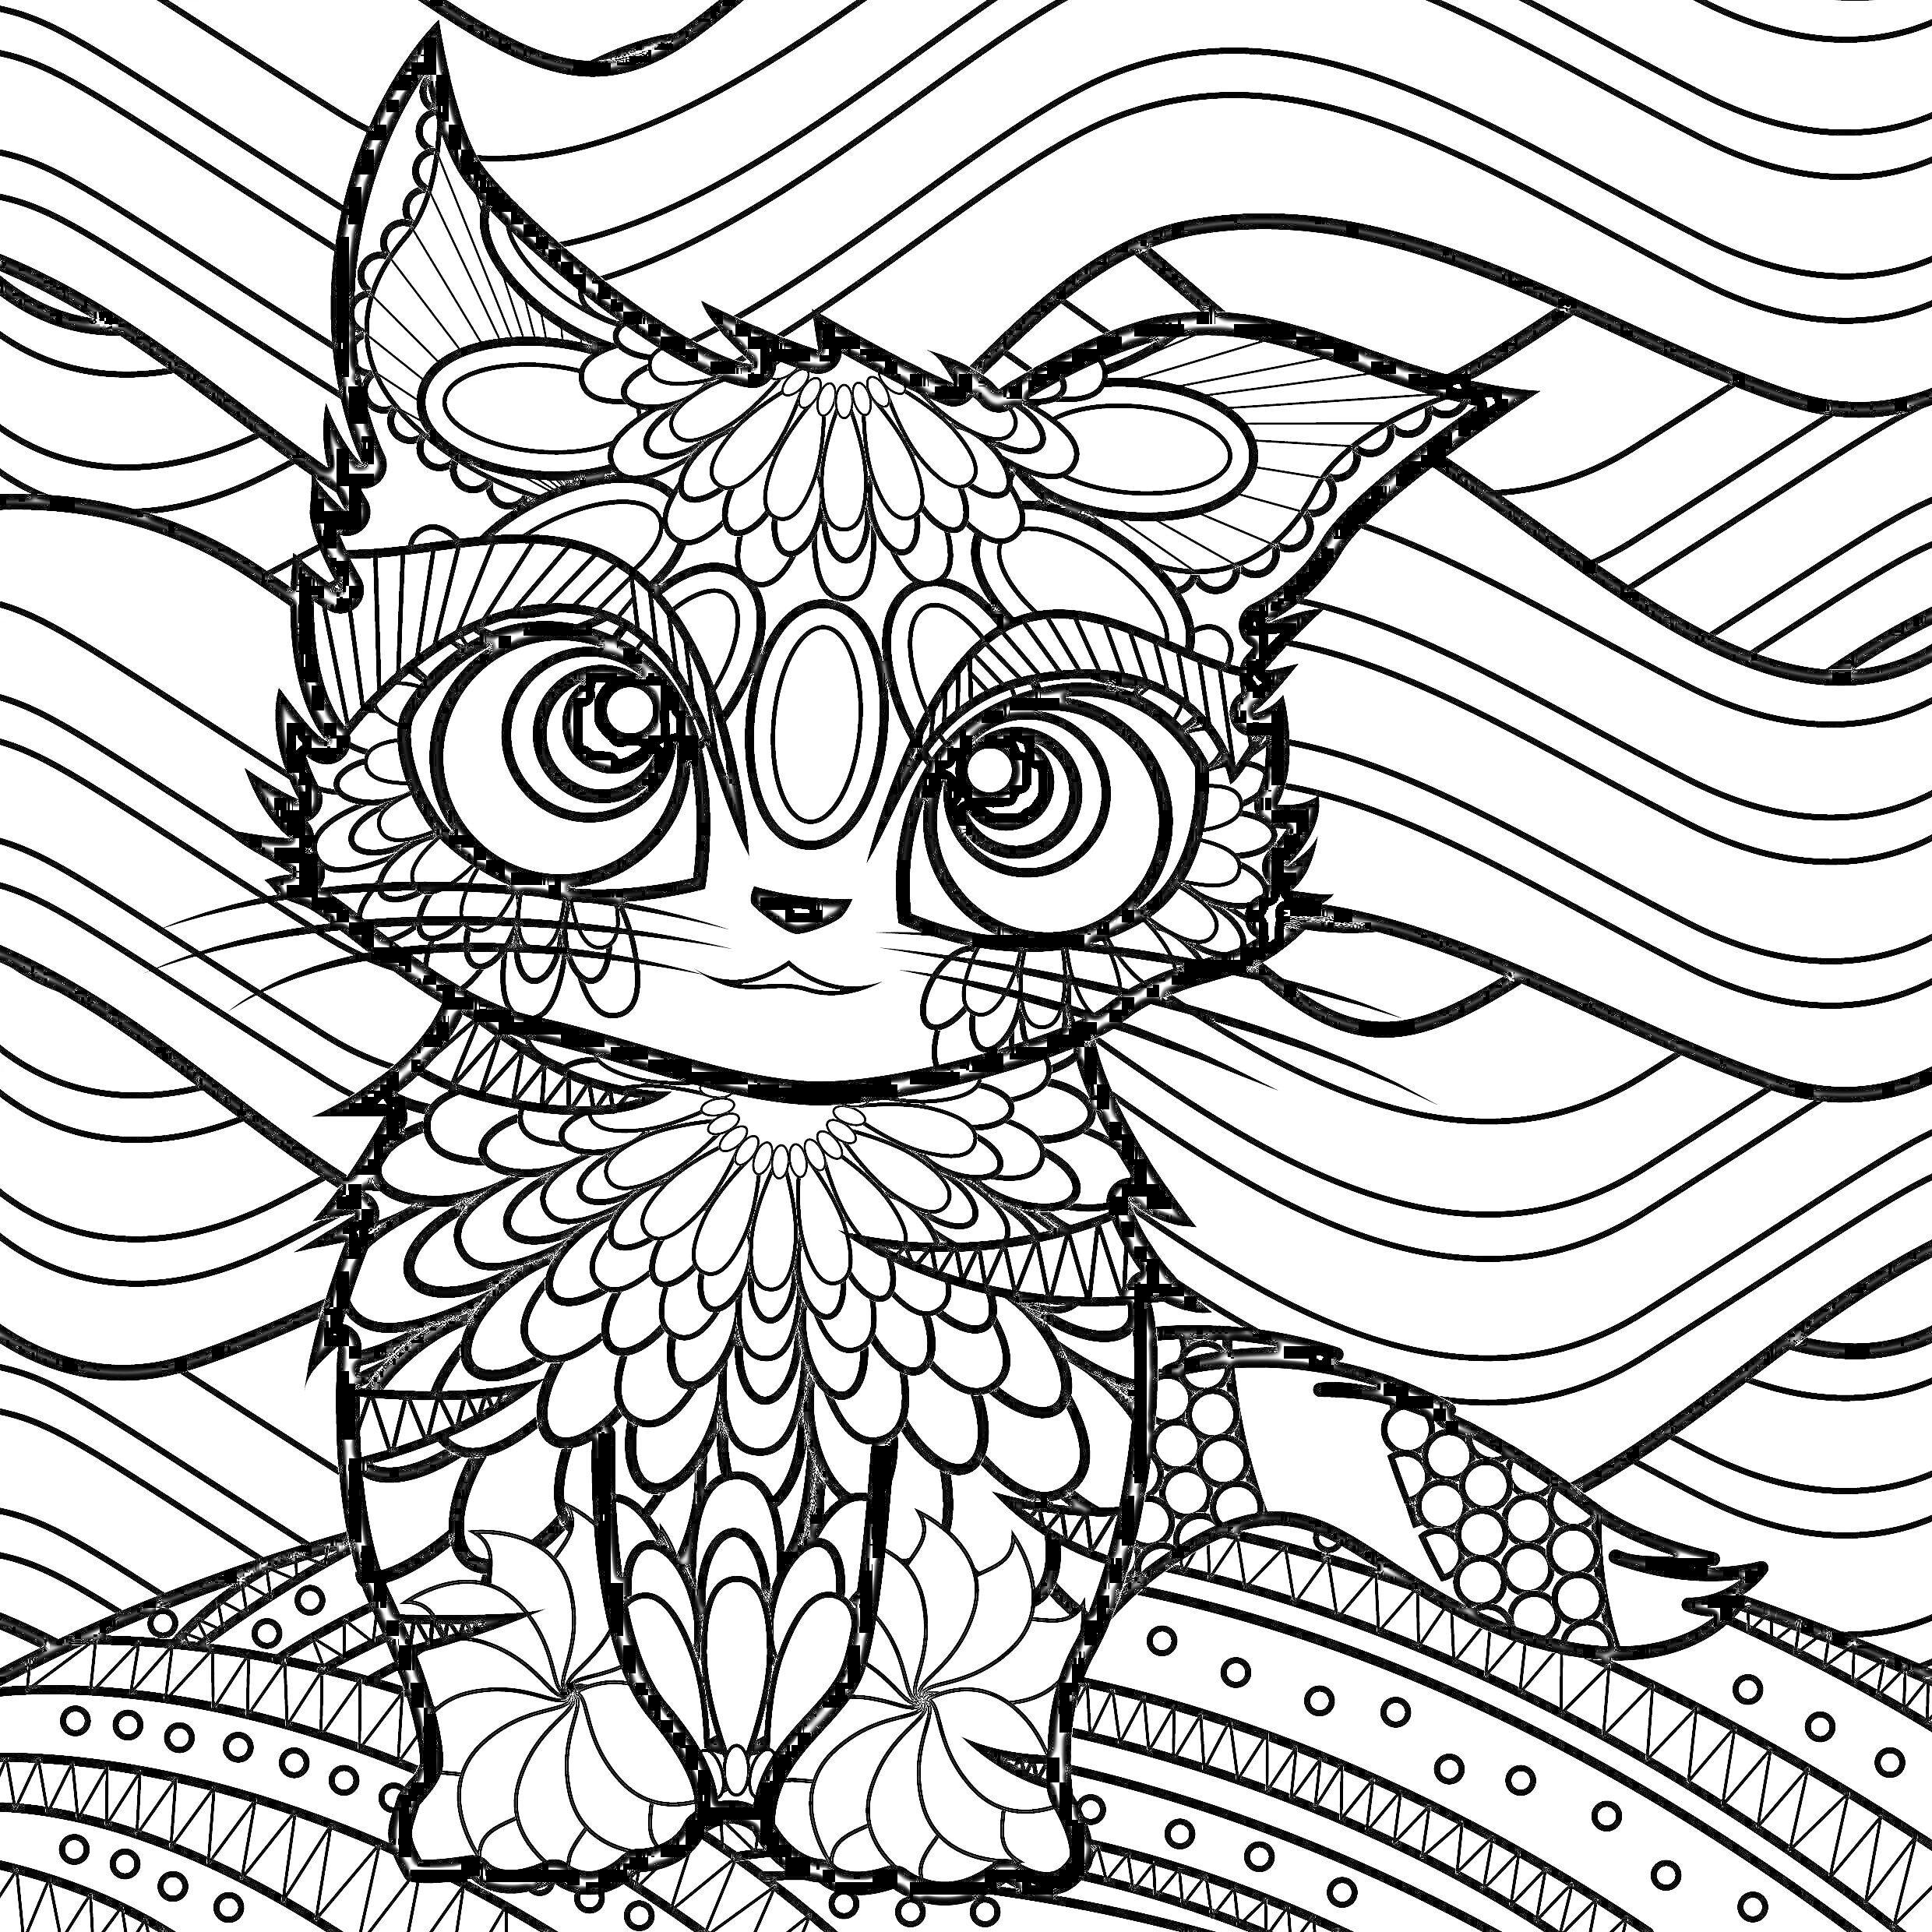 РаскраскаМандала кошка с большими глазами, сидящая на узорчатой поверхности, на фоне волнообразных линий